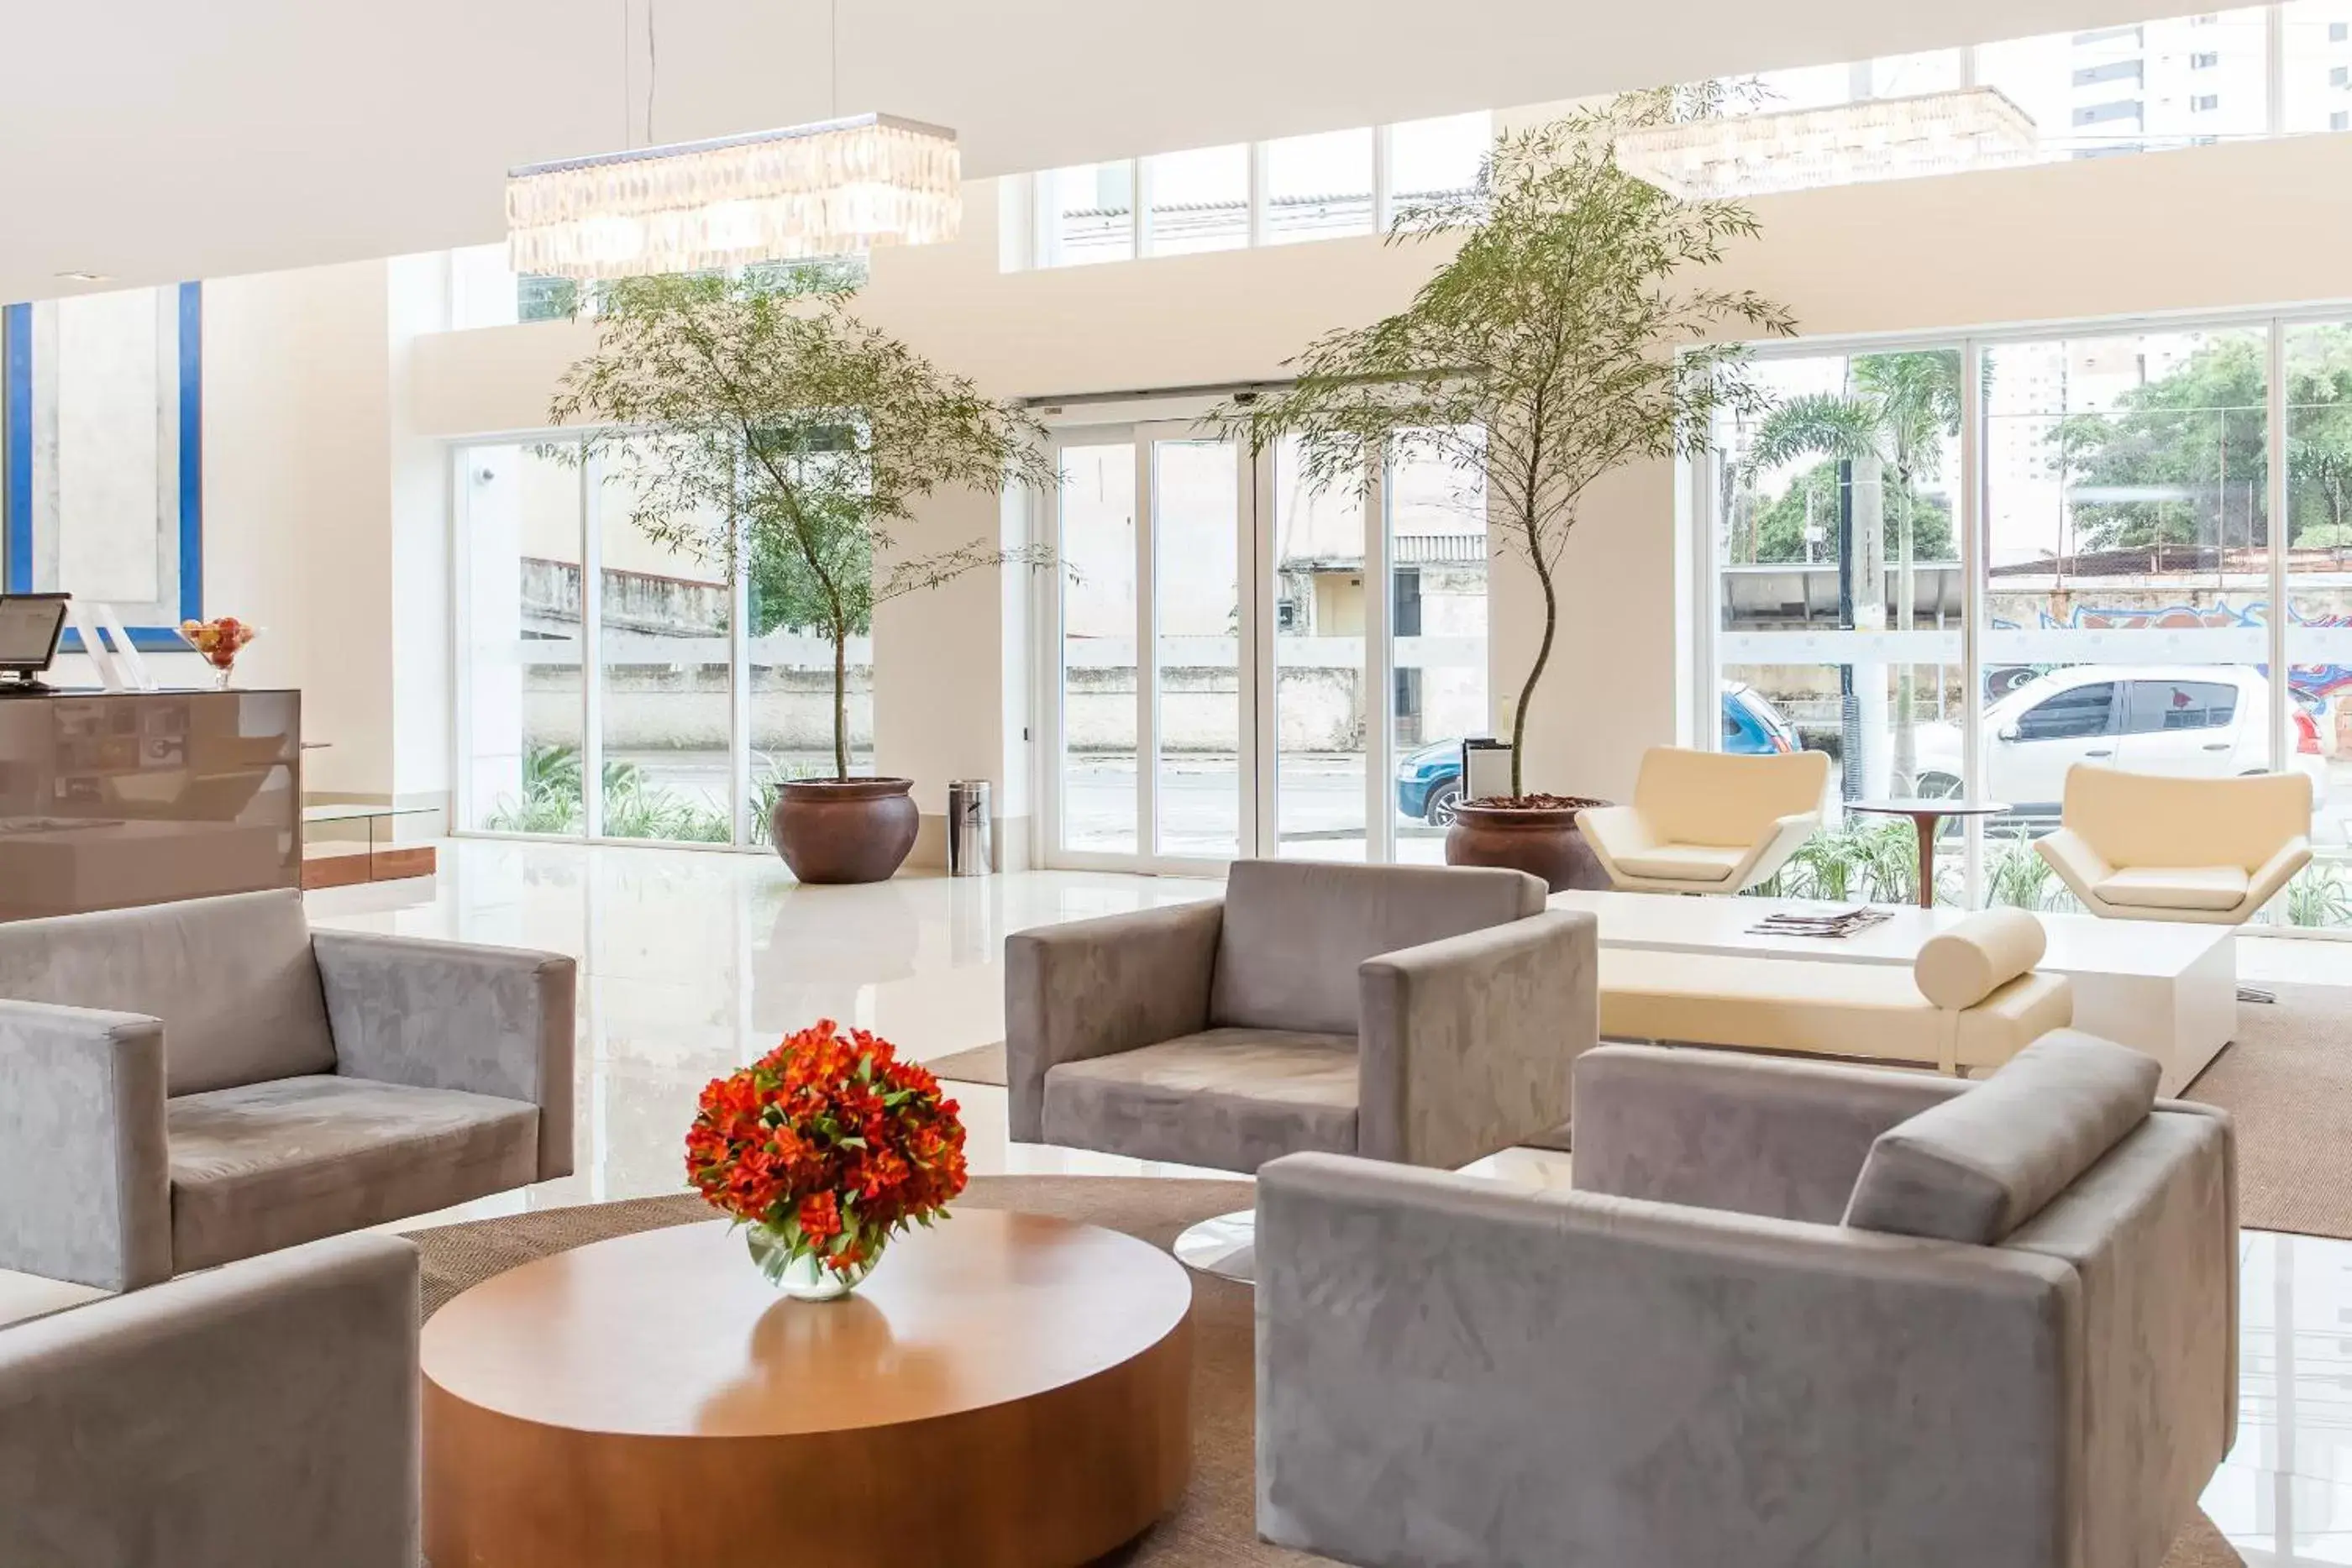 Lobby or reception in Ramada Hotel & Suites Campos Pelinca